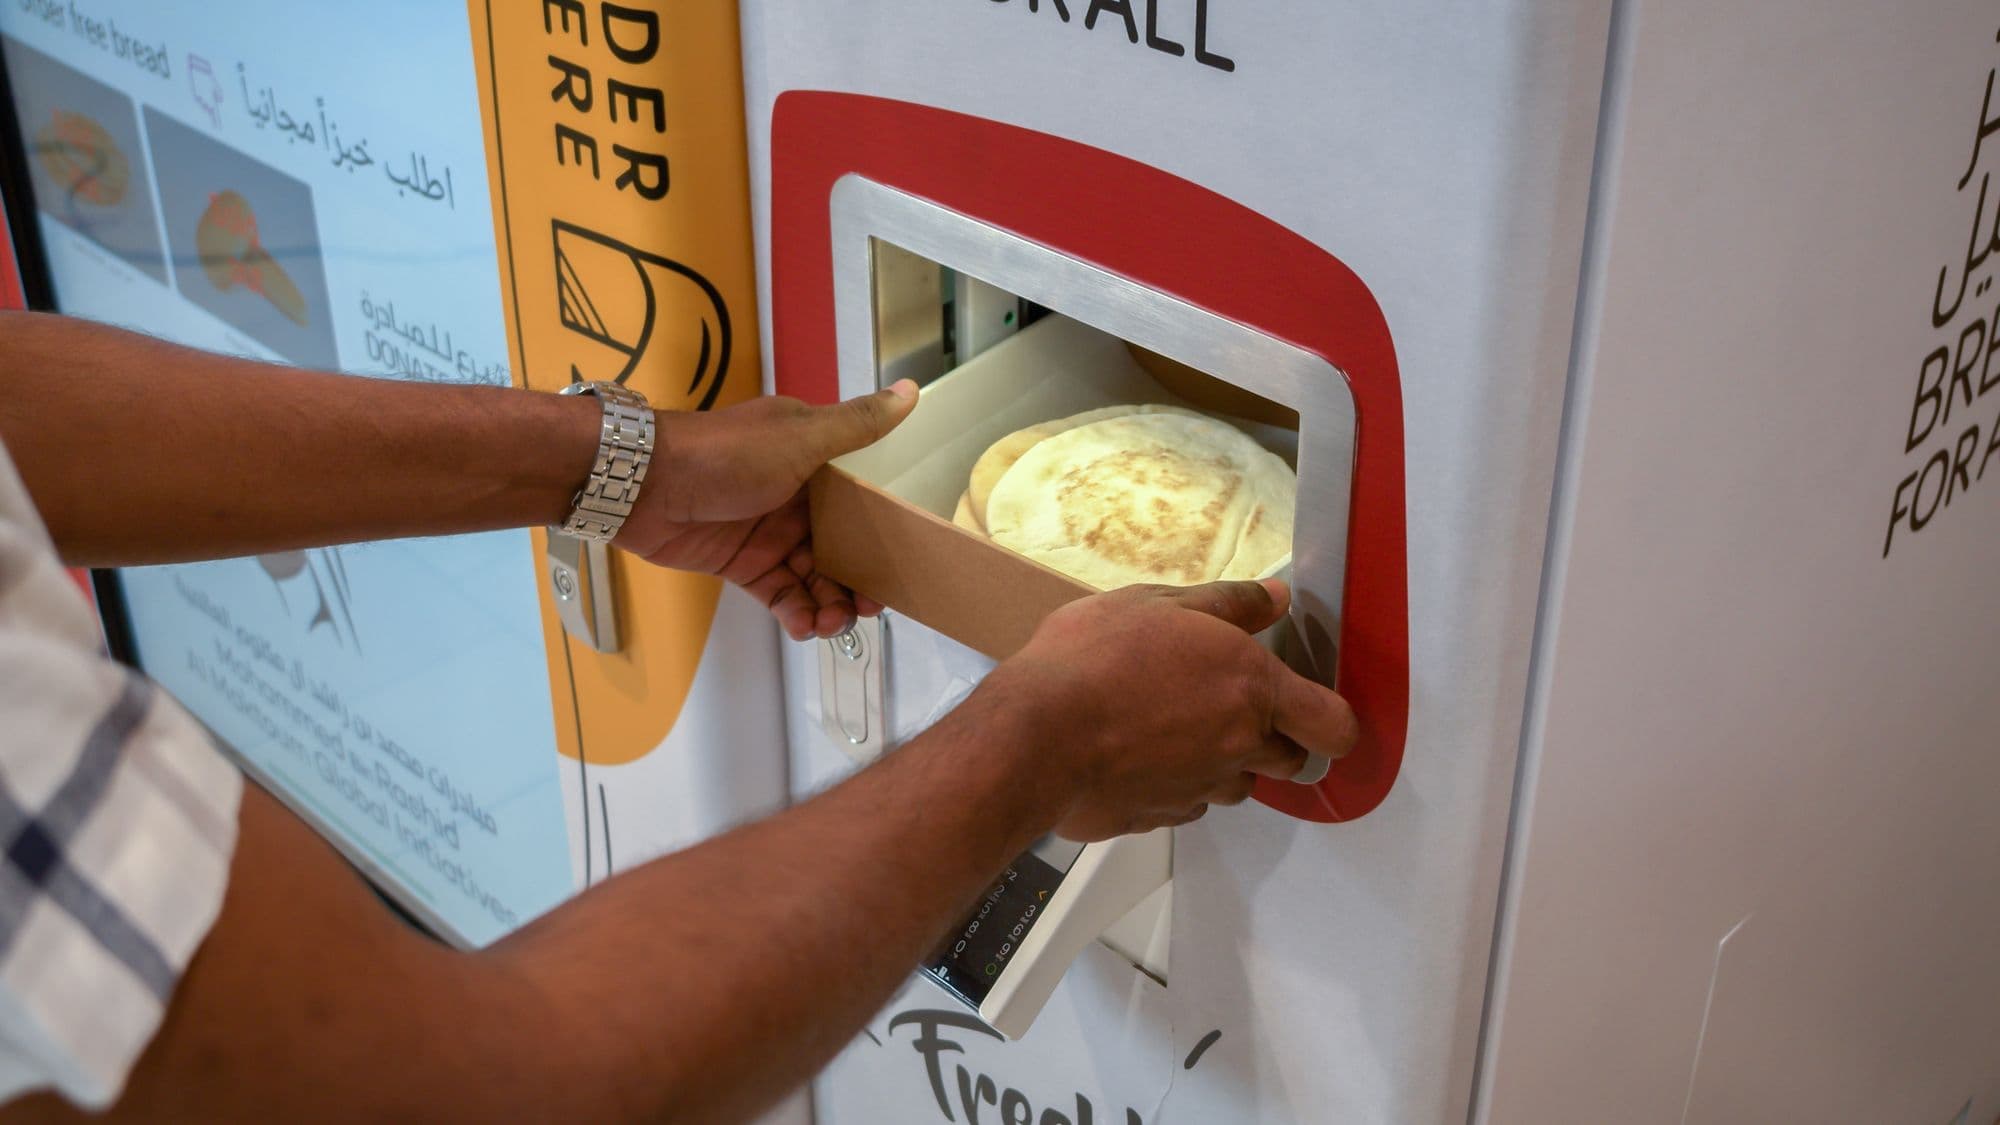 Dubai Launches ‘Bread for All’ Initiative